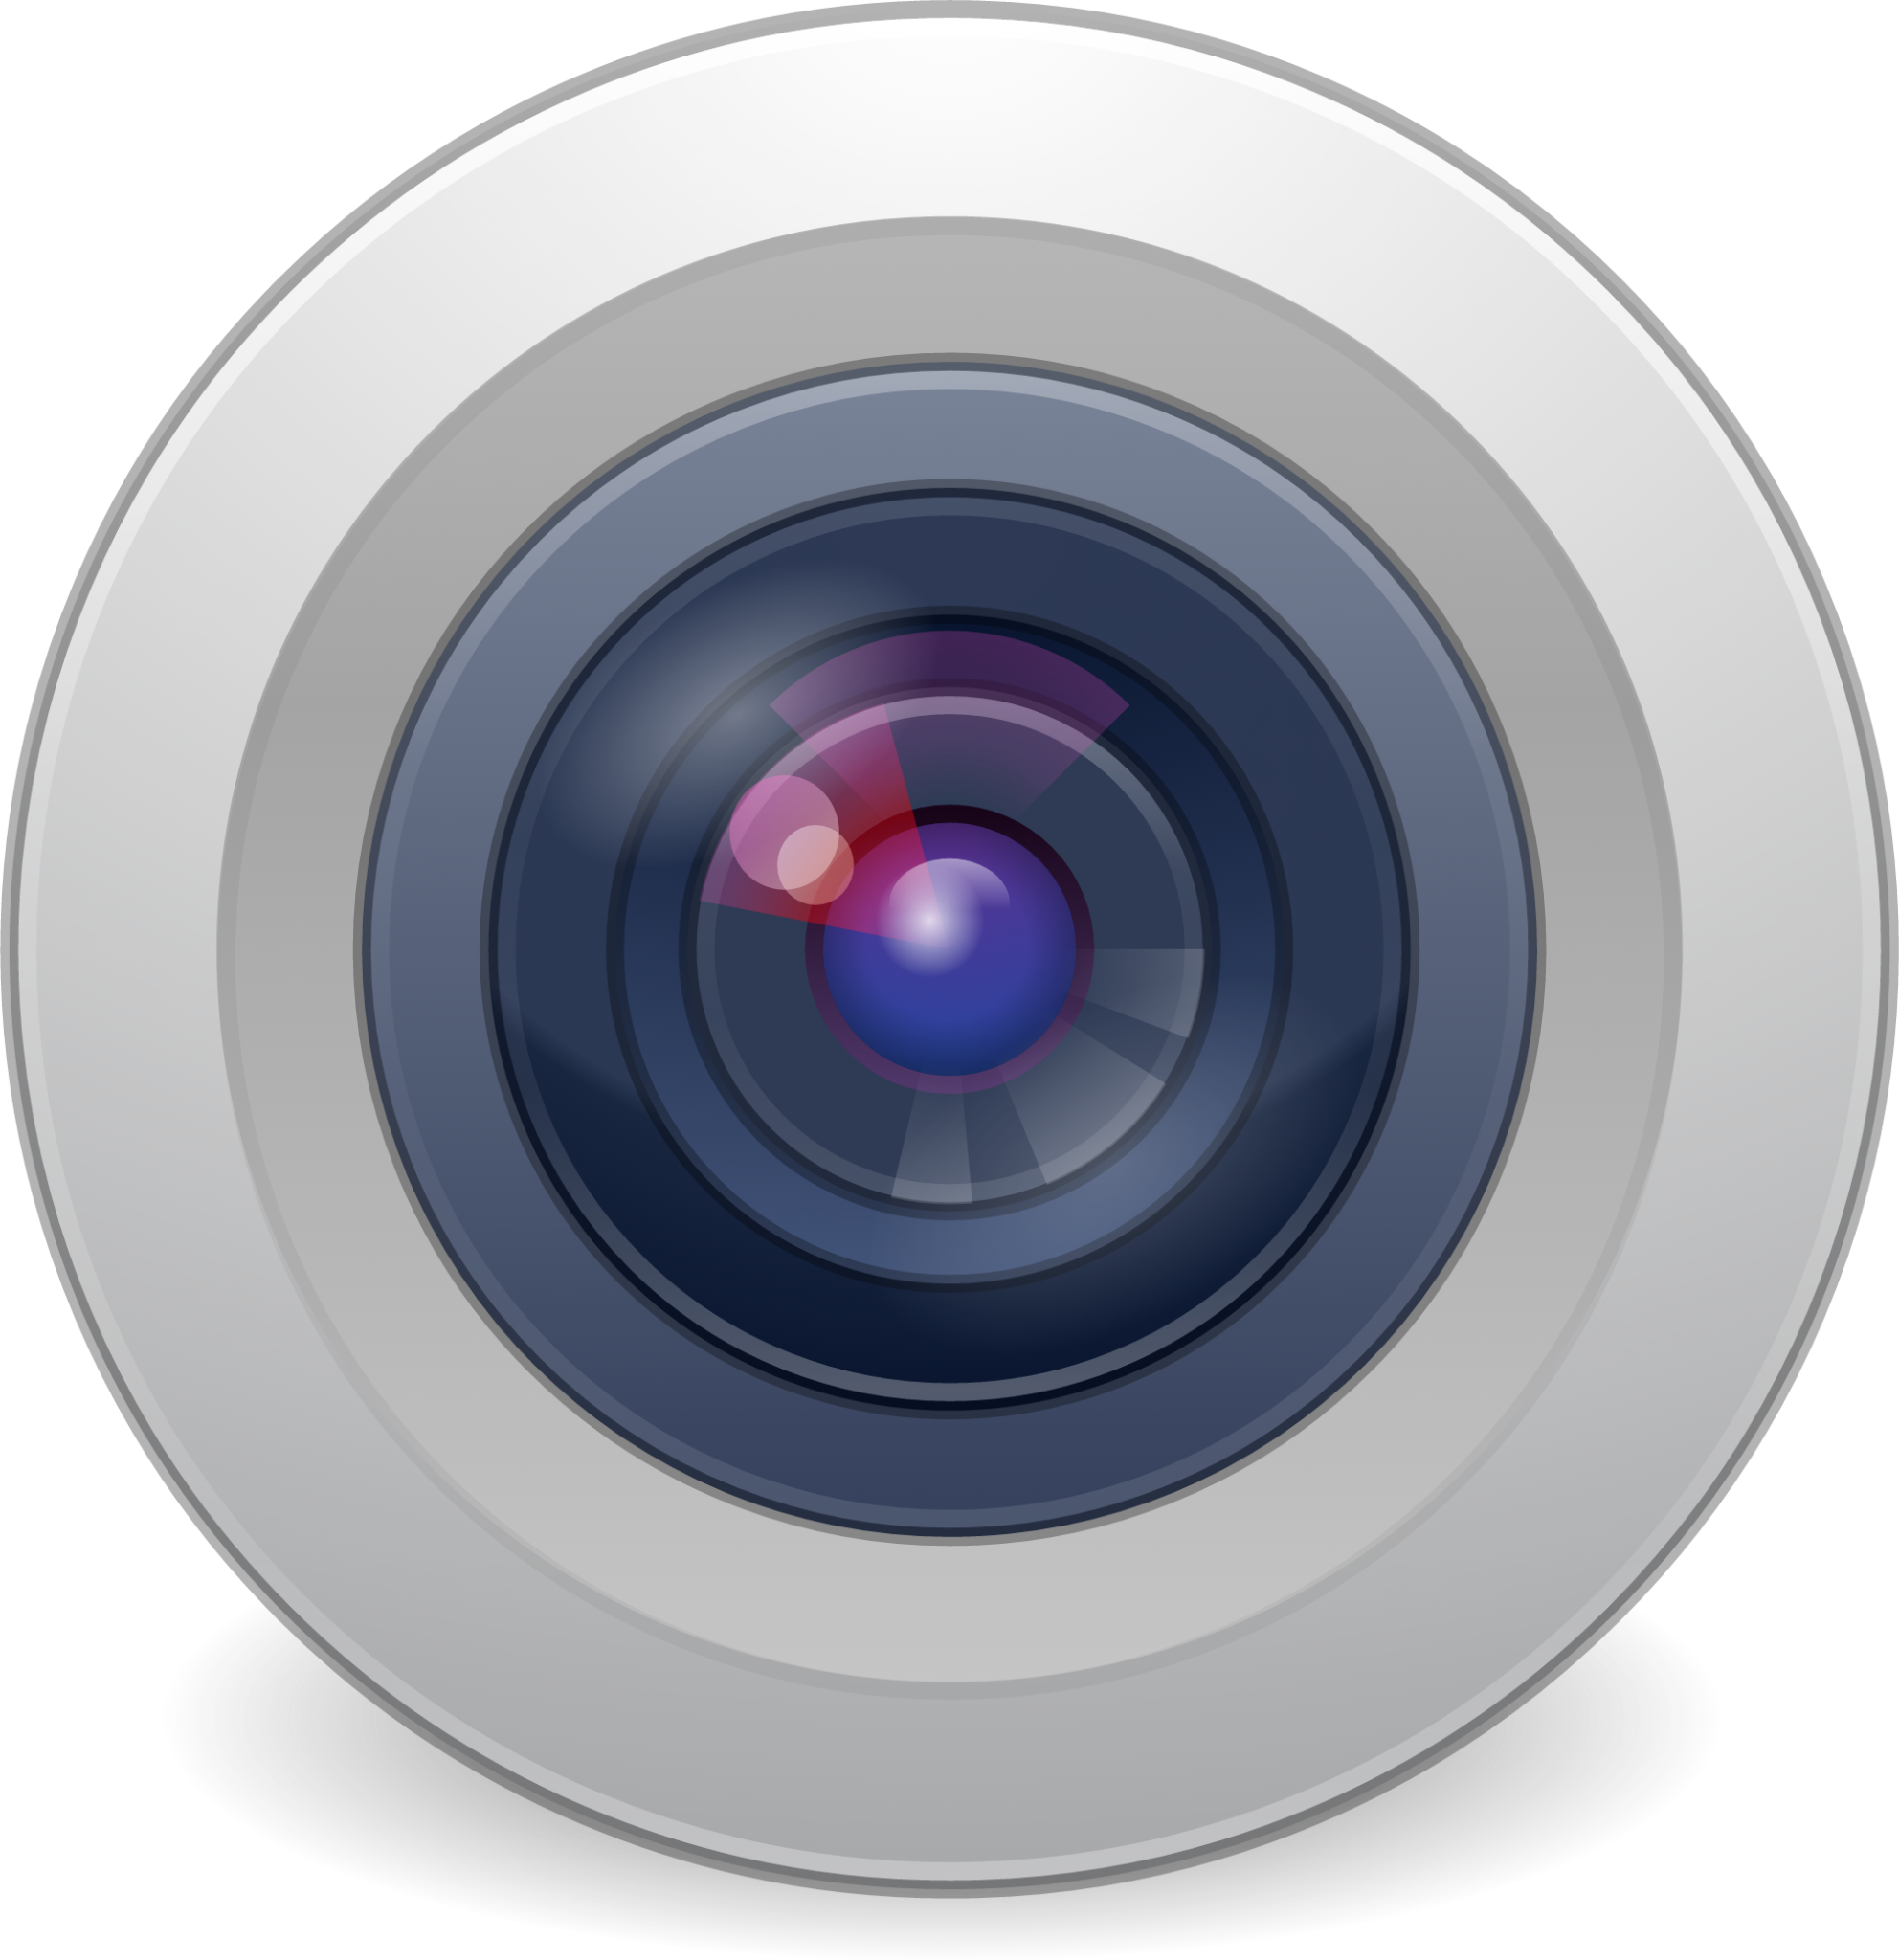 camera web icon